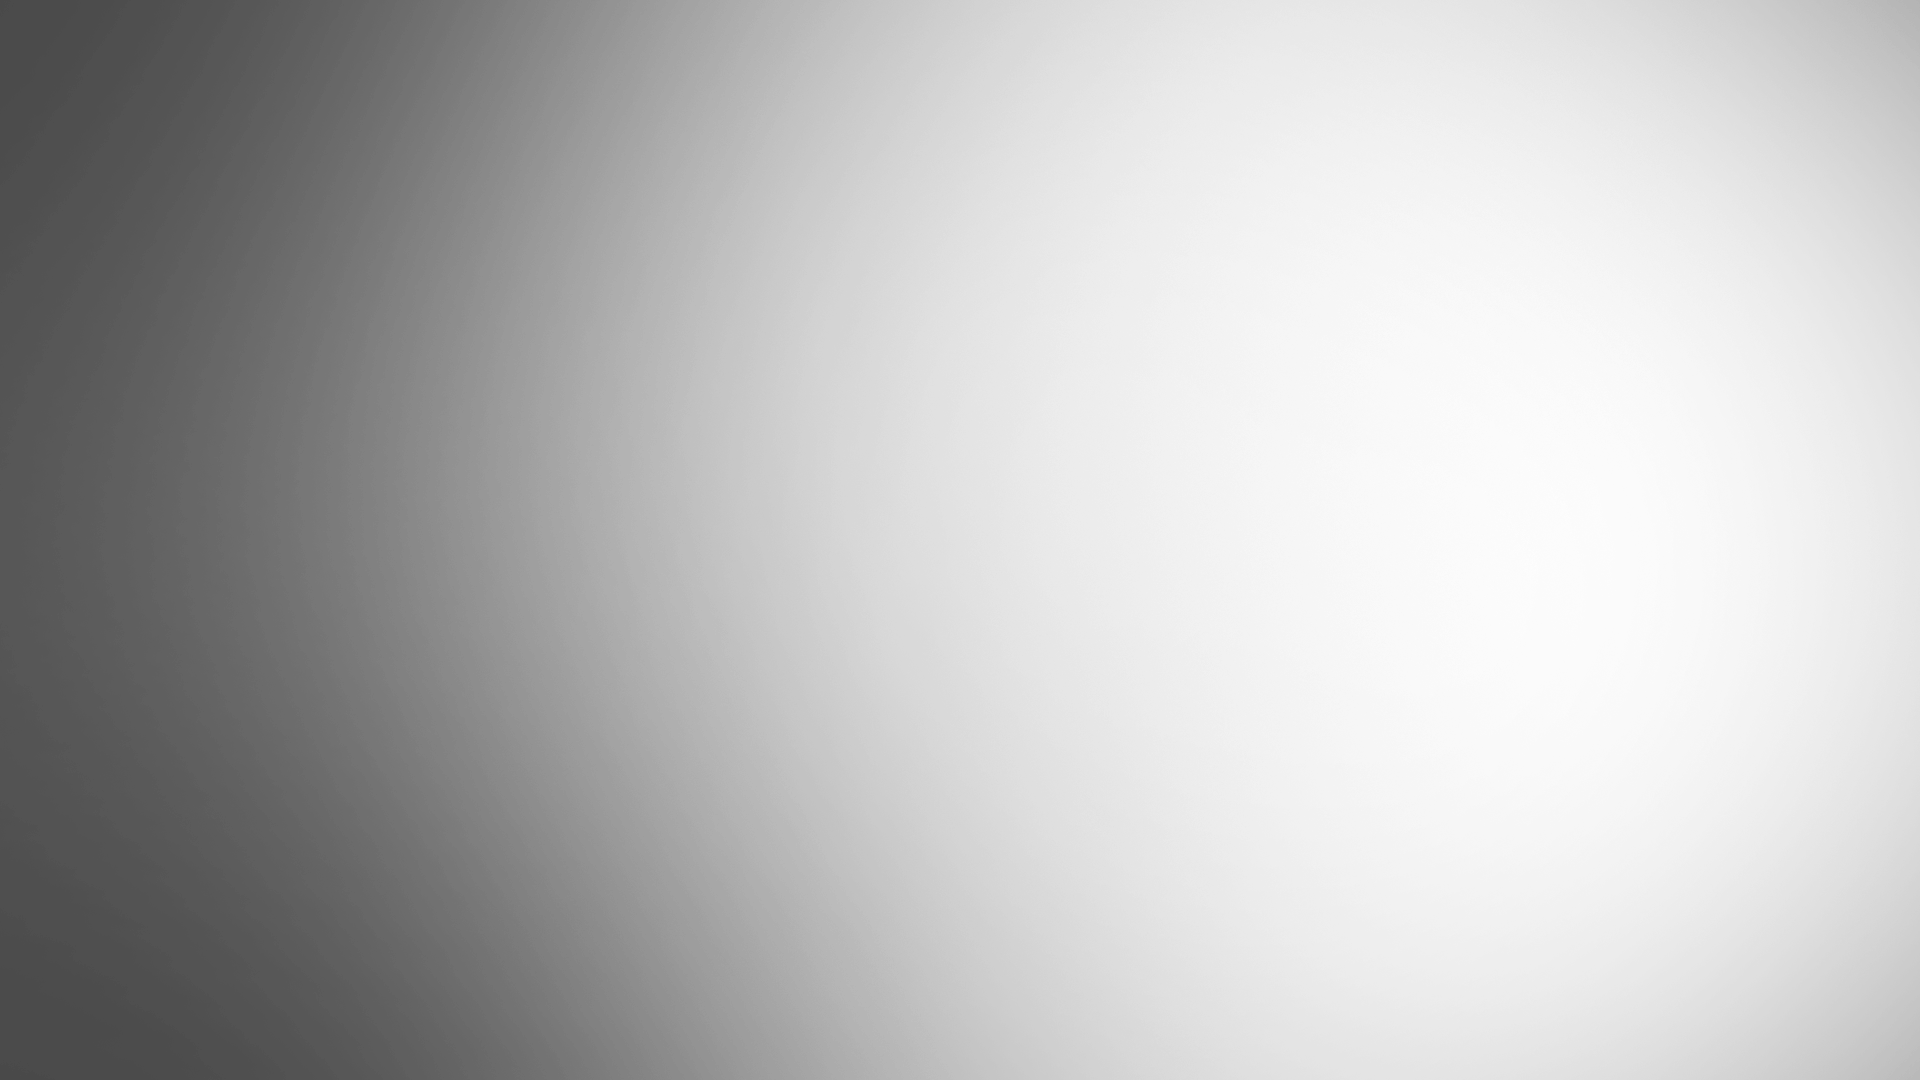 vignette.png (1920×1080)